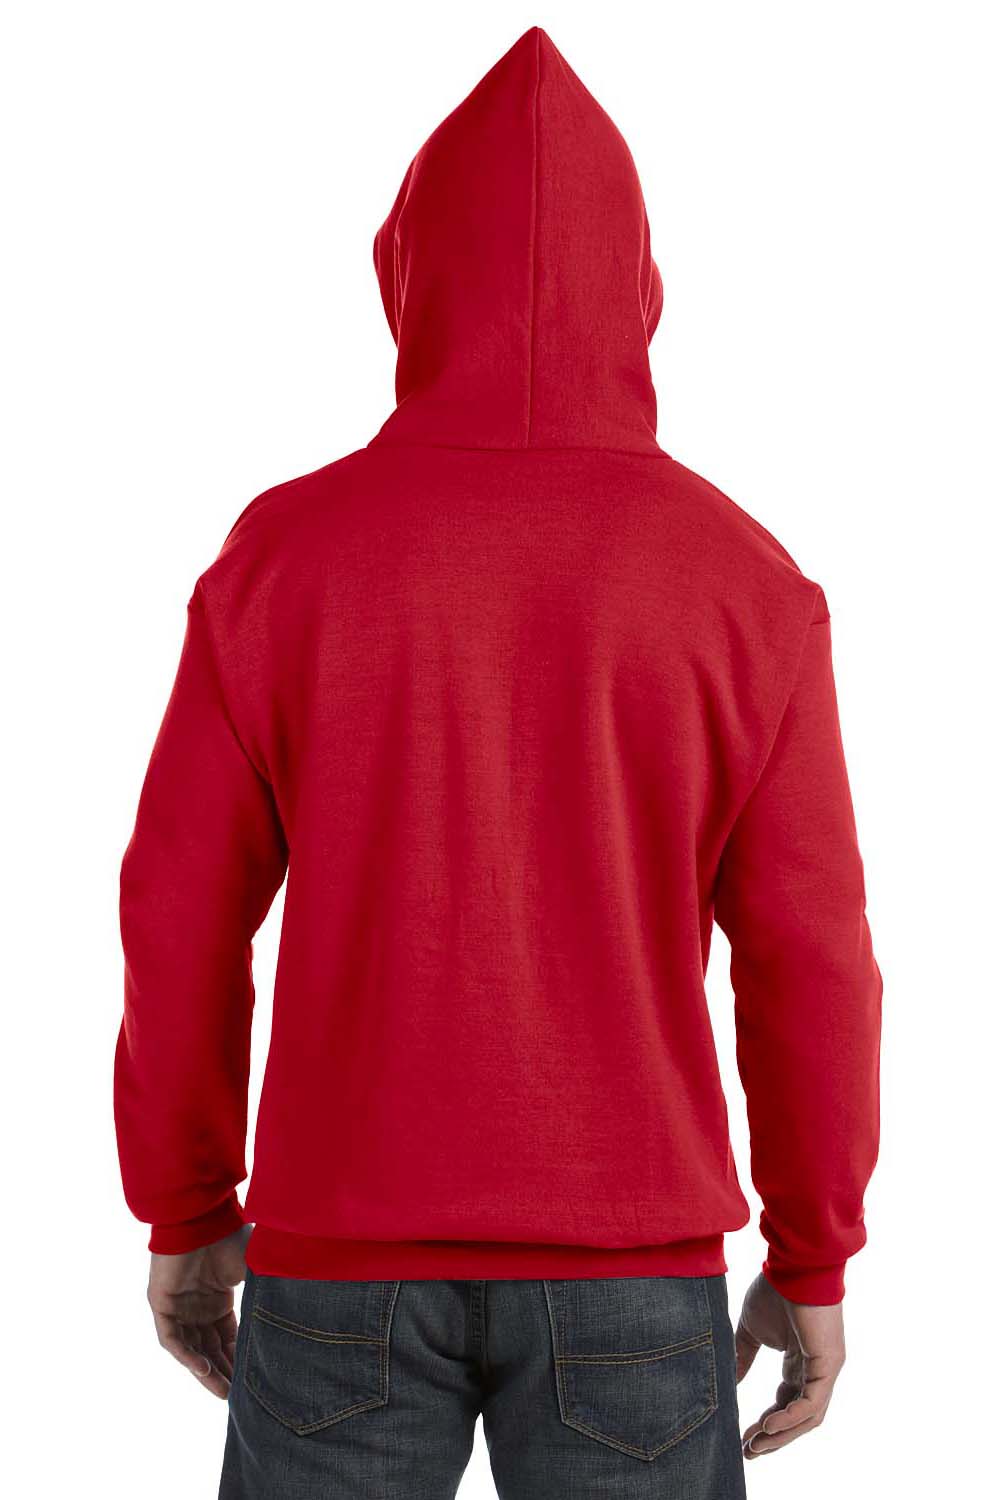 Hanes P170 Mens EcoSmart Print Pro XP Hooded Sweatshirt Hoodie Red Back